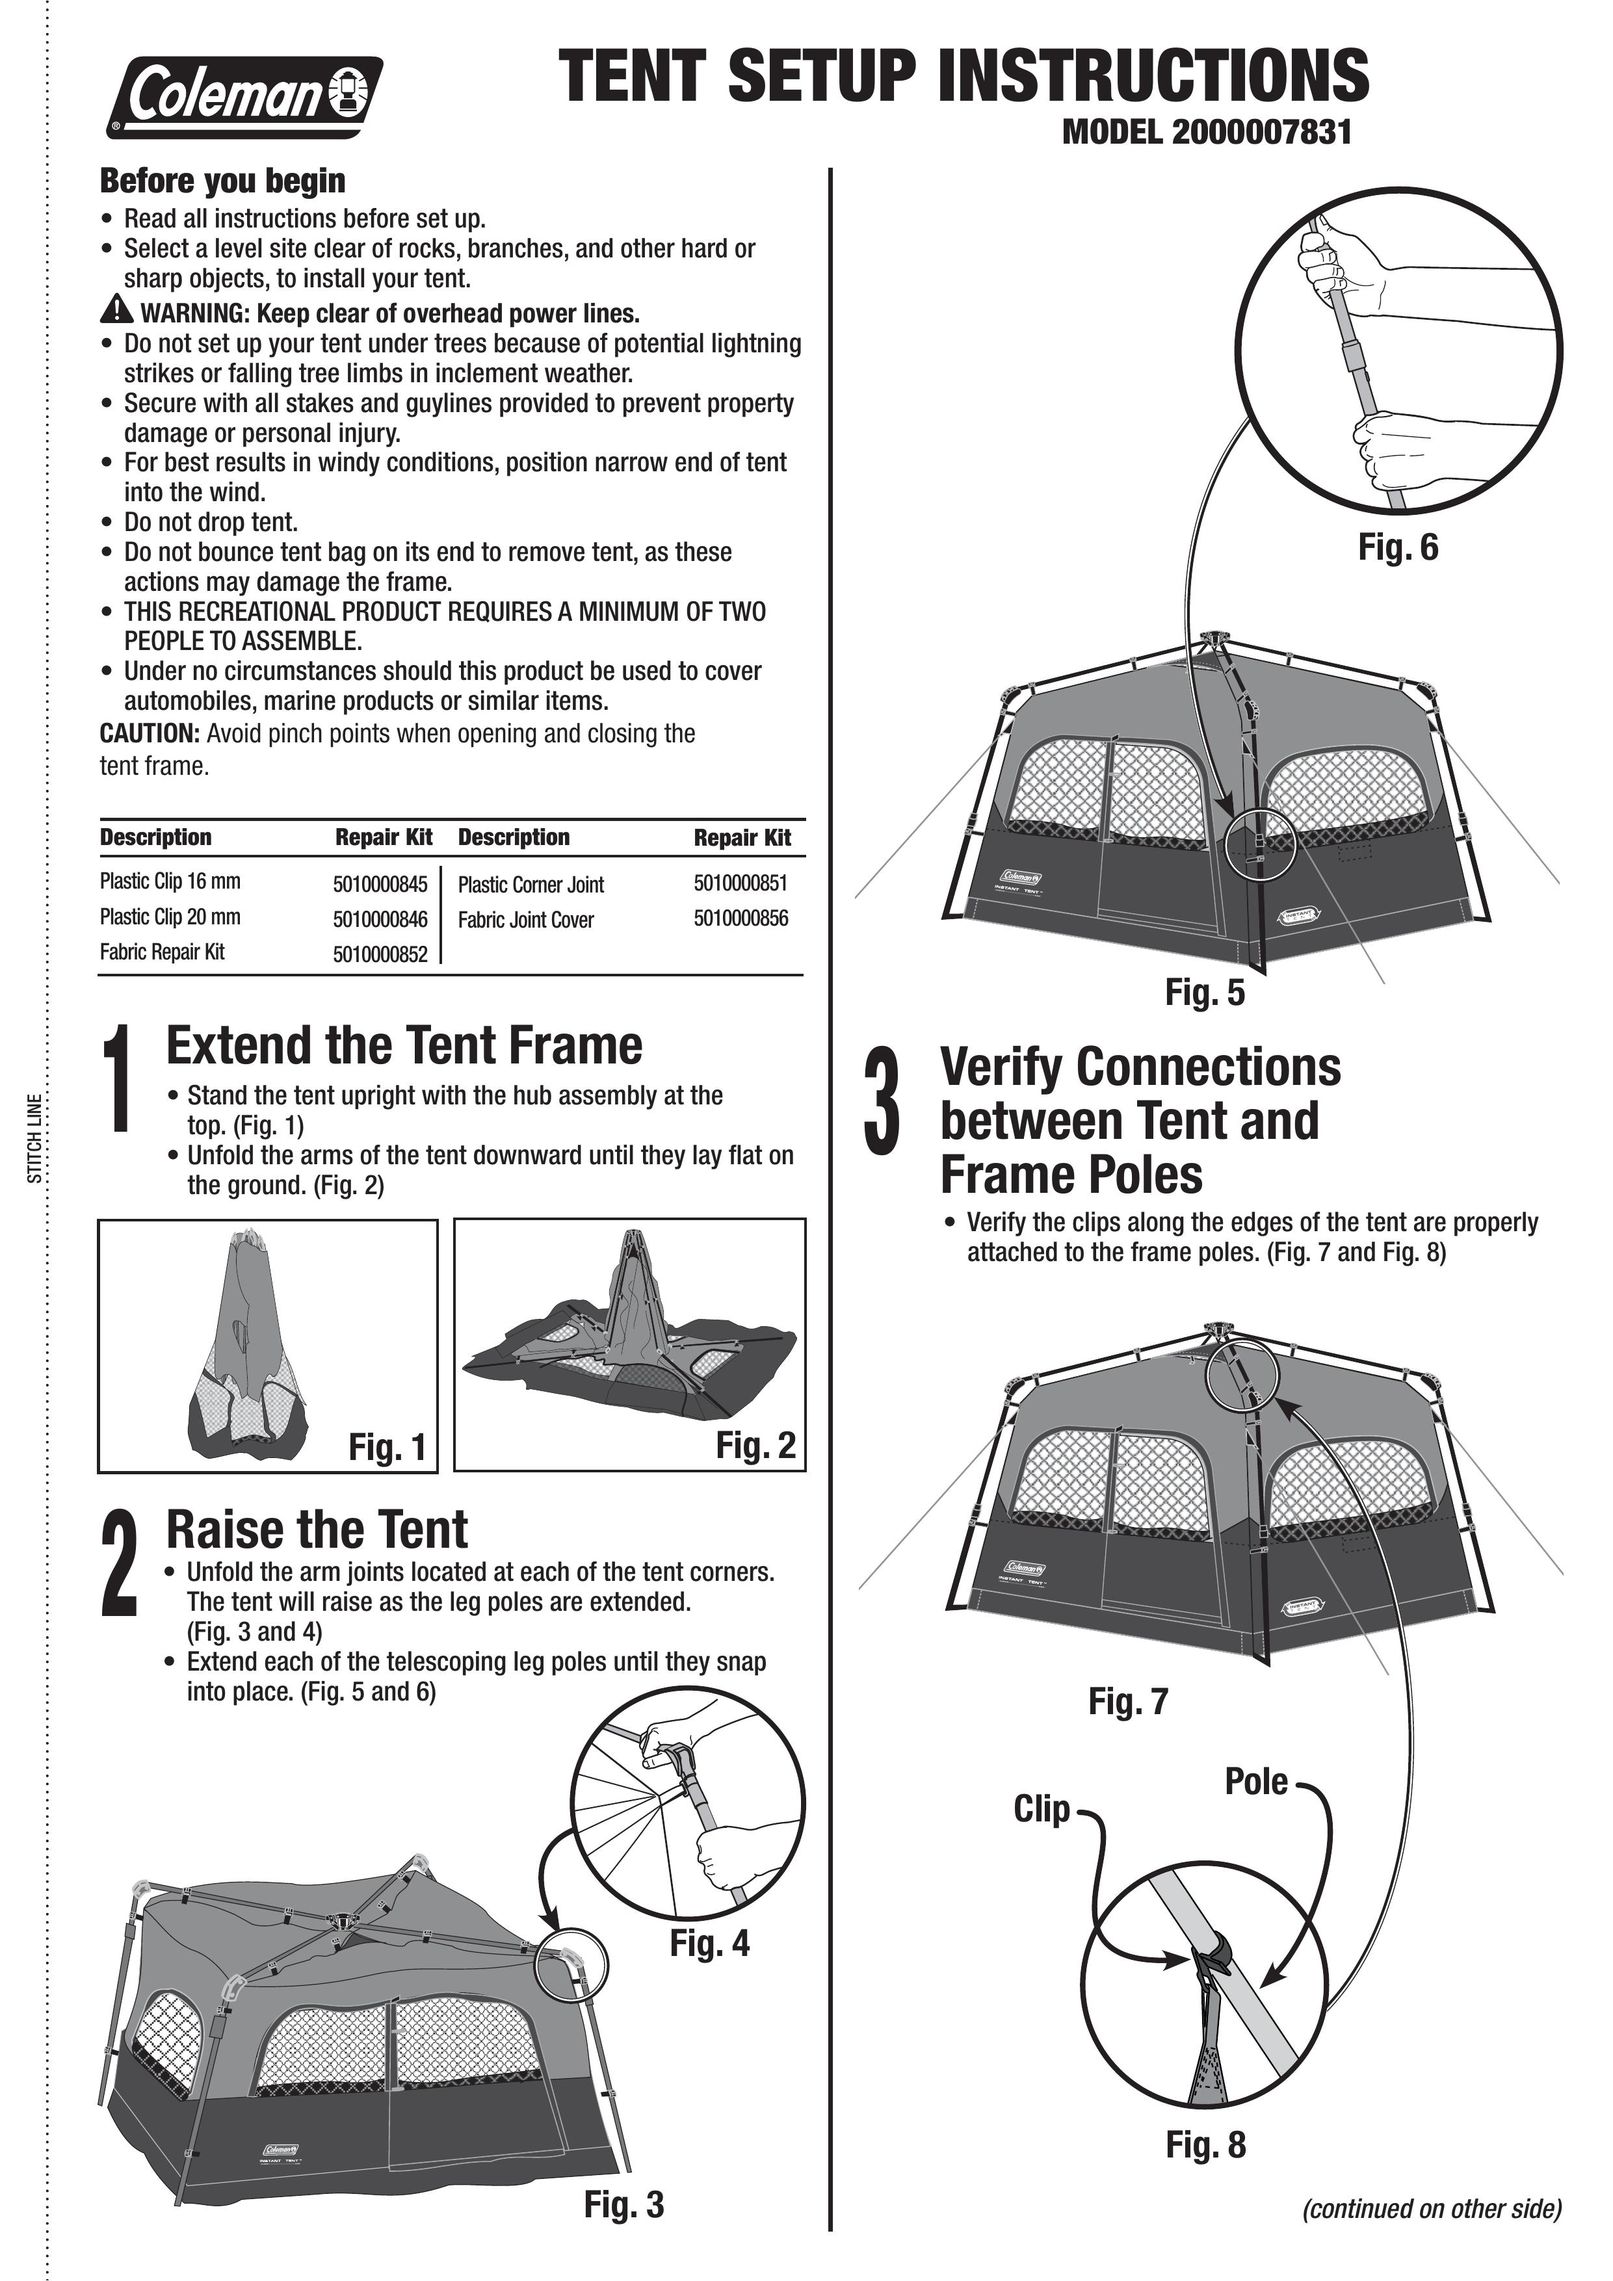 Coleman 2000007831 Tent User Manual